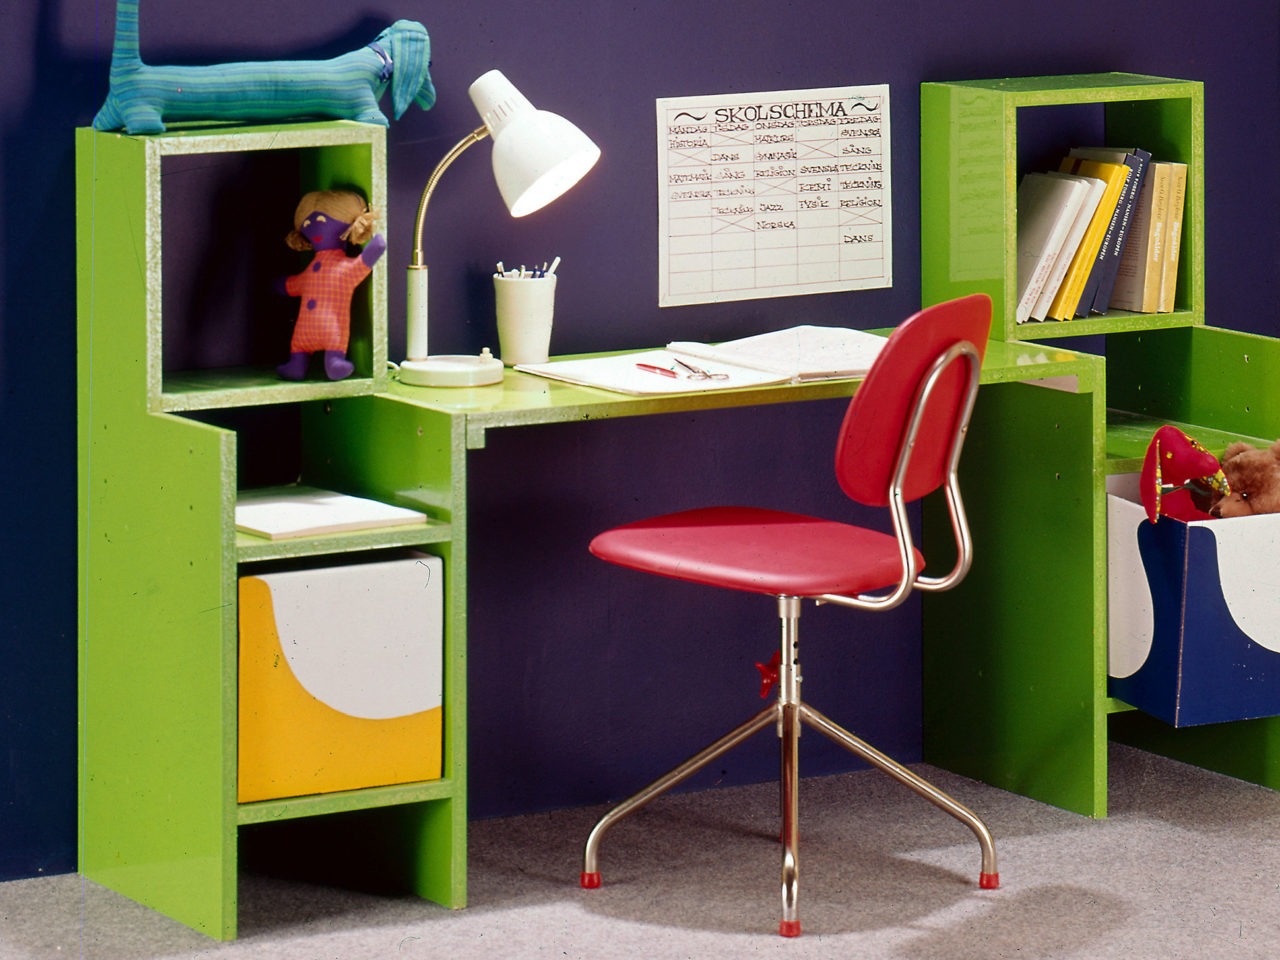 En röd snurrstol står vid en ljusgrön kombination av barnskrivbord och förvaringsmöbel. Mörkblå vägg, grå nålfiltsmatta.